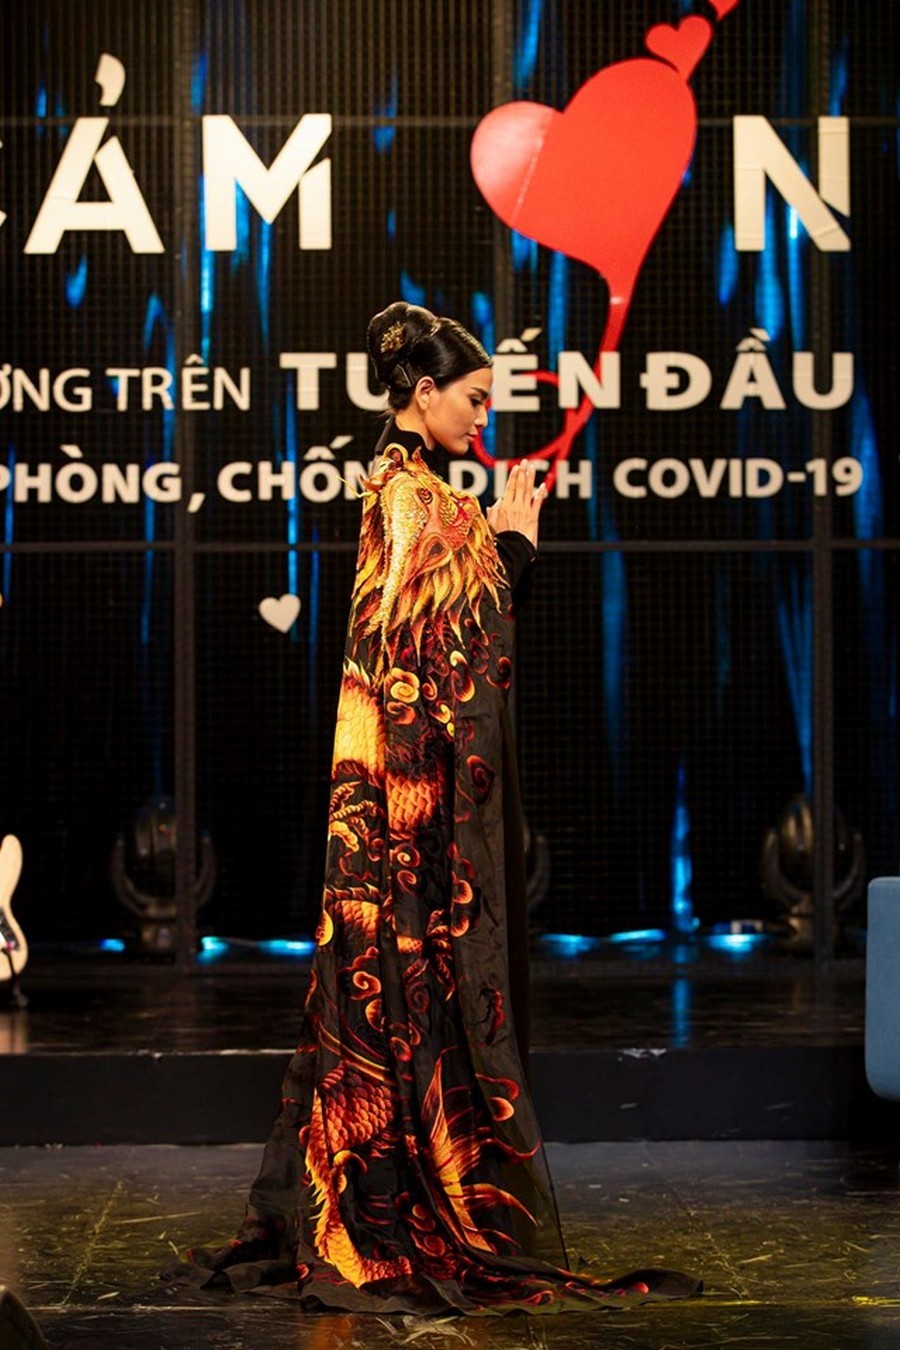  
Mẫu áo dài từ Cannes được nàng Hậu thể hiện trên sân khấu gây quỹ. (Ảnh: NVCC)